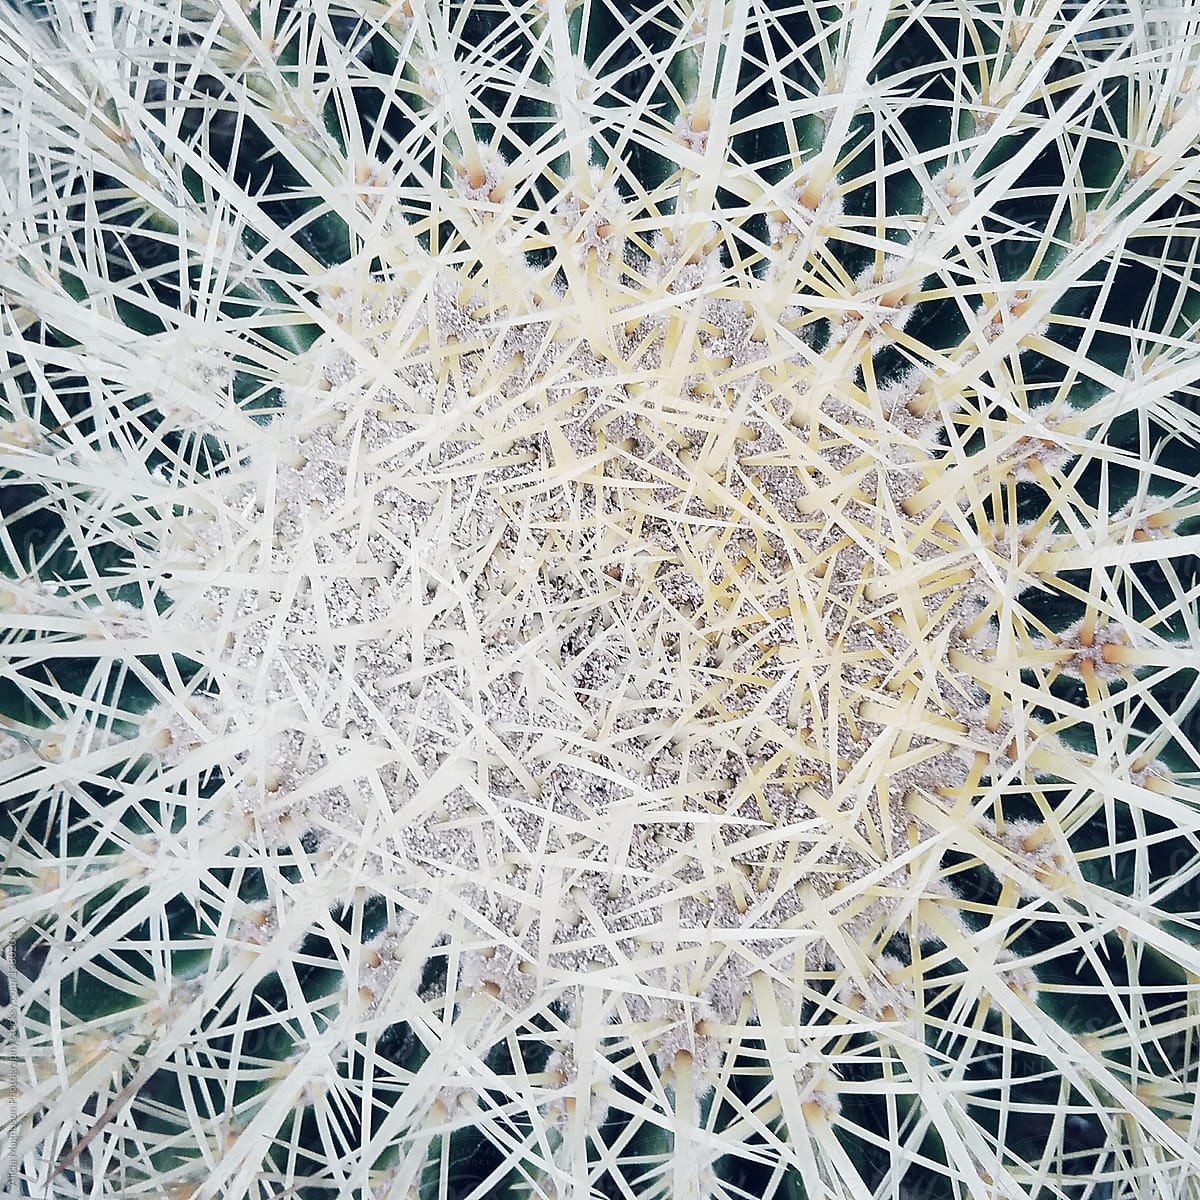 Ball Cactus Close Up